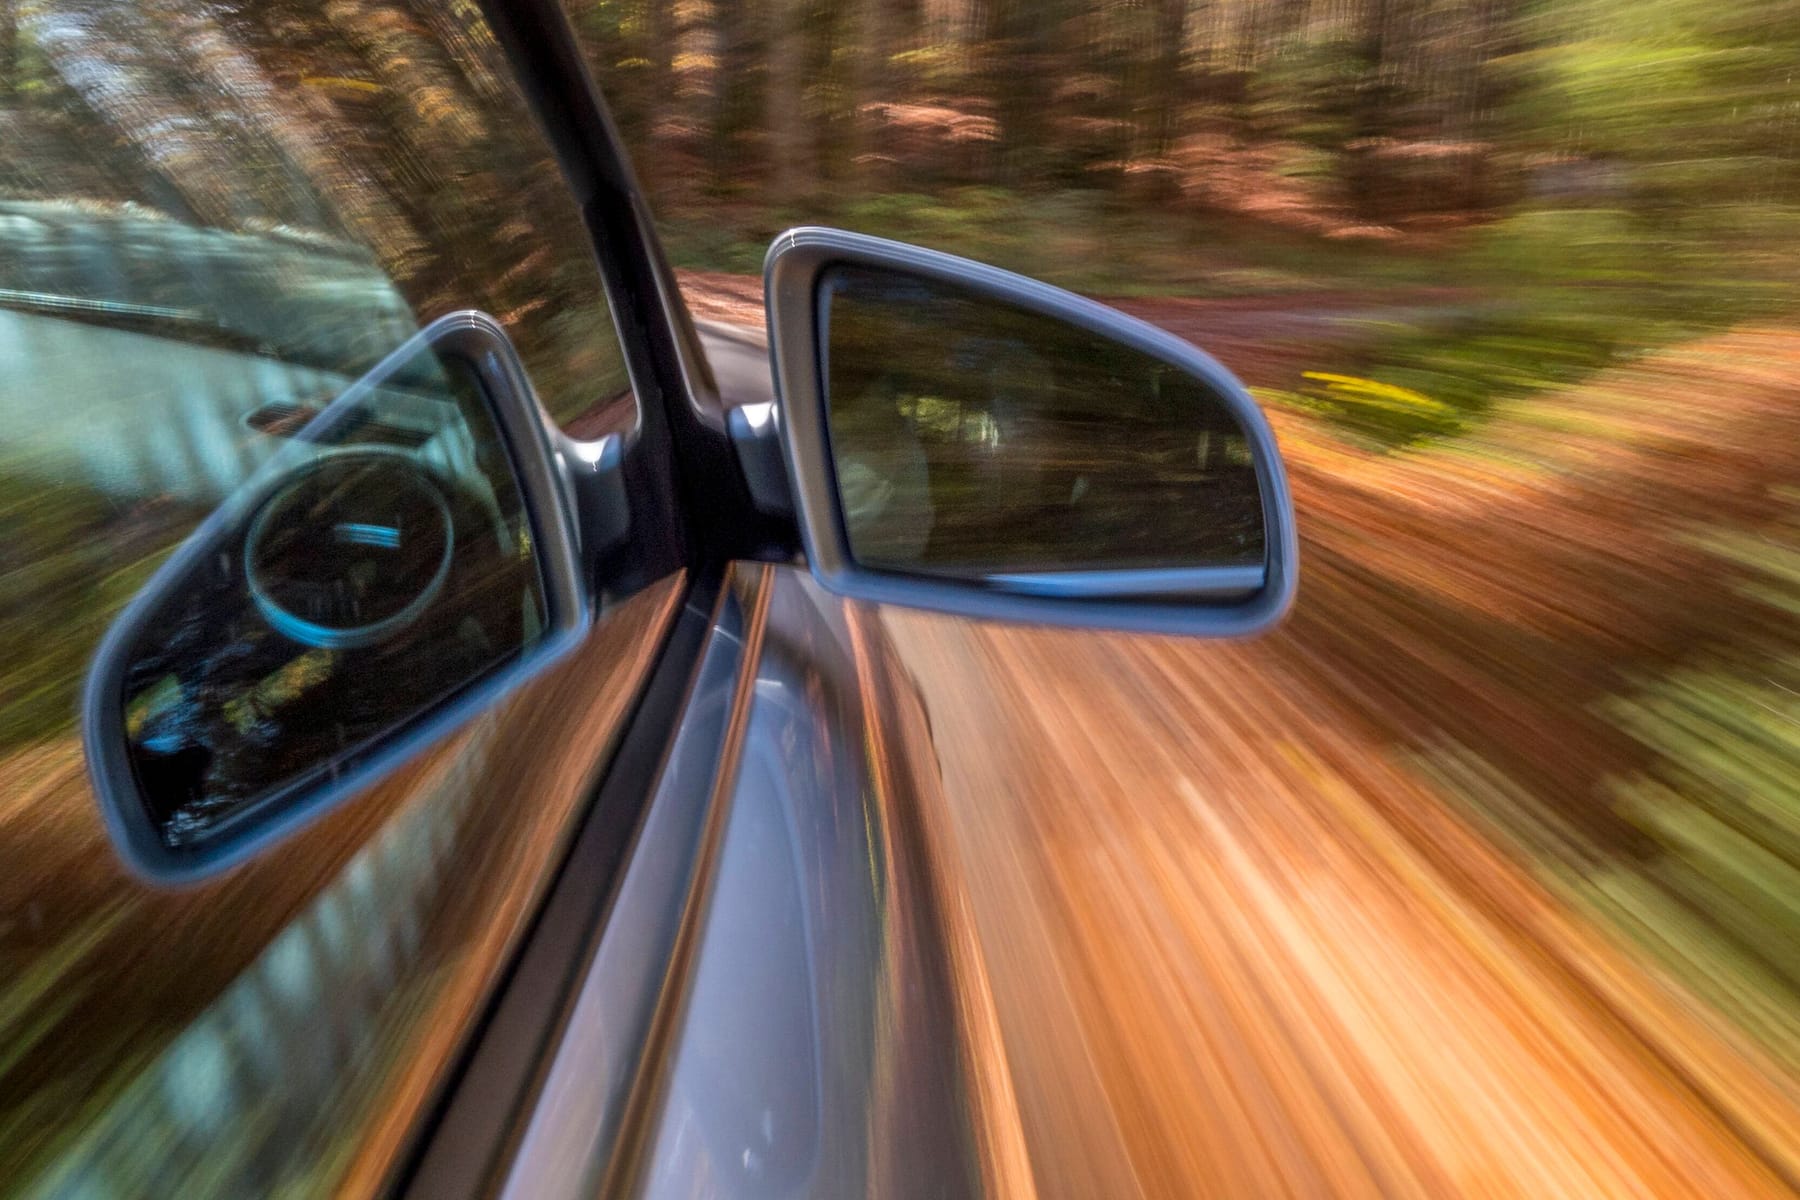 Beschlagene Autoscheiben: So behältst du den Durchblick, Was hilft, wenn  die Autoscheiben von innen beschlagen? Wir zeigen dir, mit welchen Tricks  du die lästige Feuchtigkeit im Auto loswirst ➡️